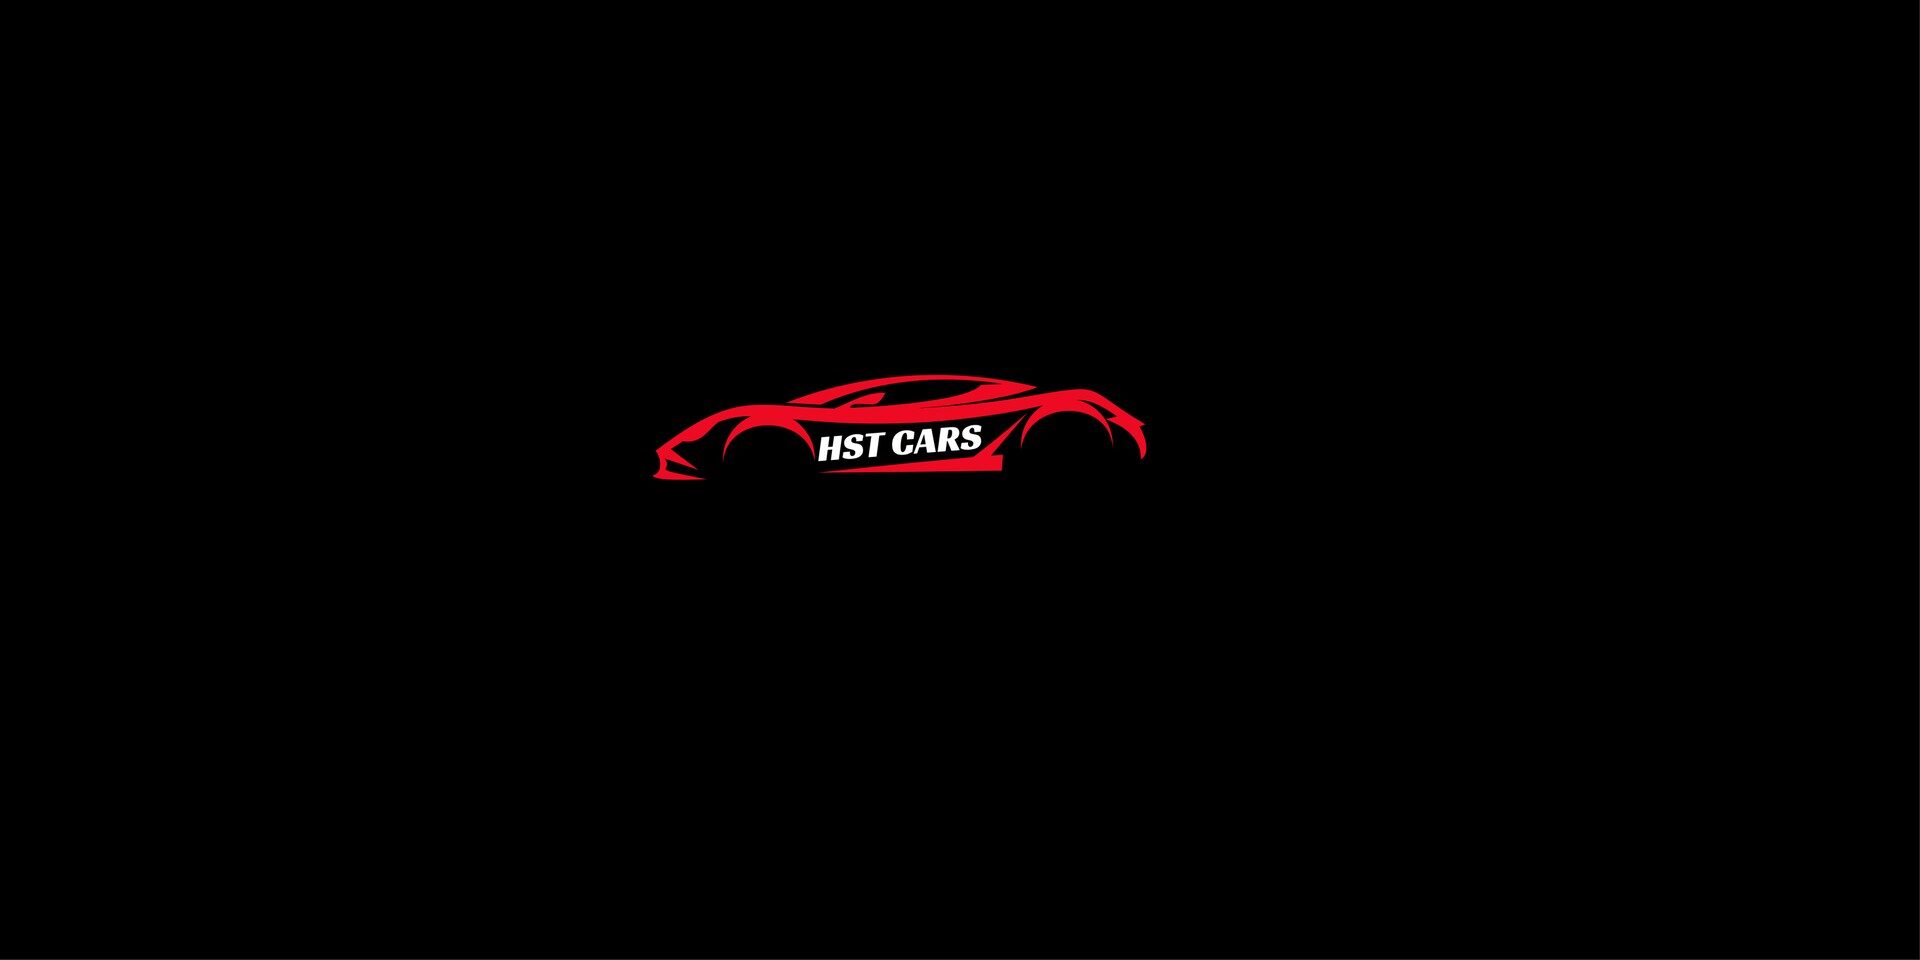 HST CARS